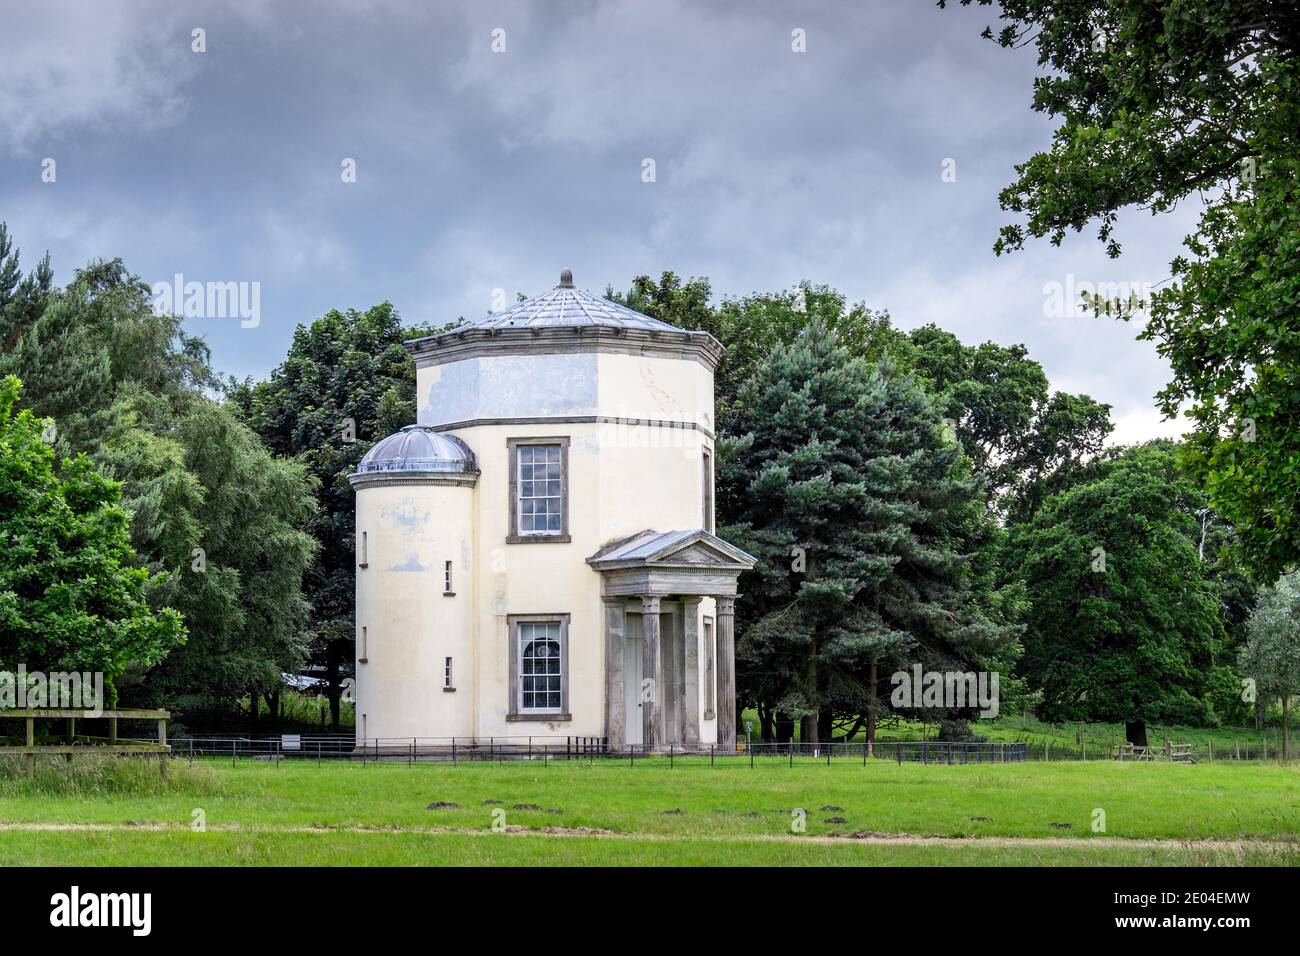 The Tower of the Winds, befindet sich auf dem Gelände des Shugborough Estate, in der Nähe von Stafford, Staffordshire, England, Großbritannien Stockfoto